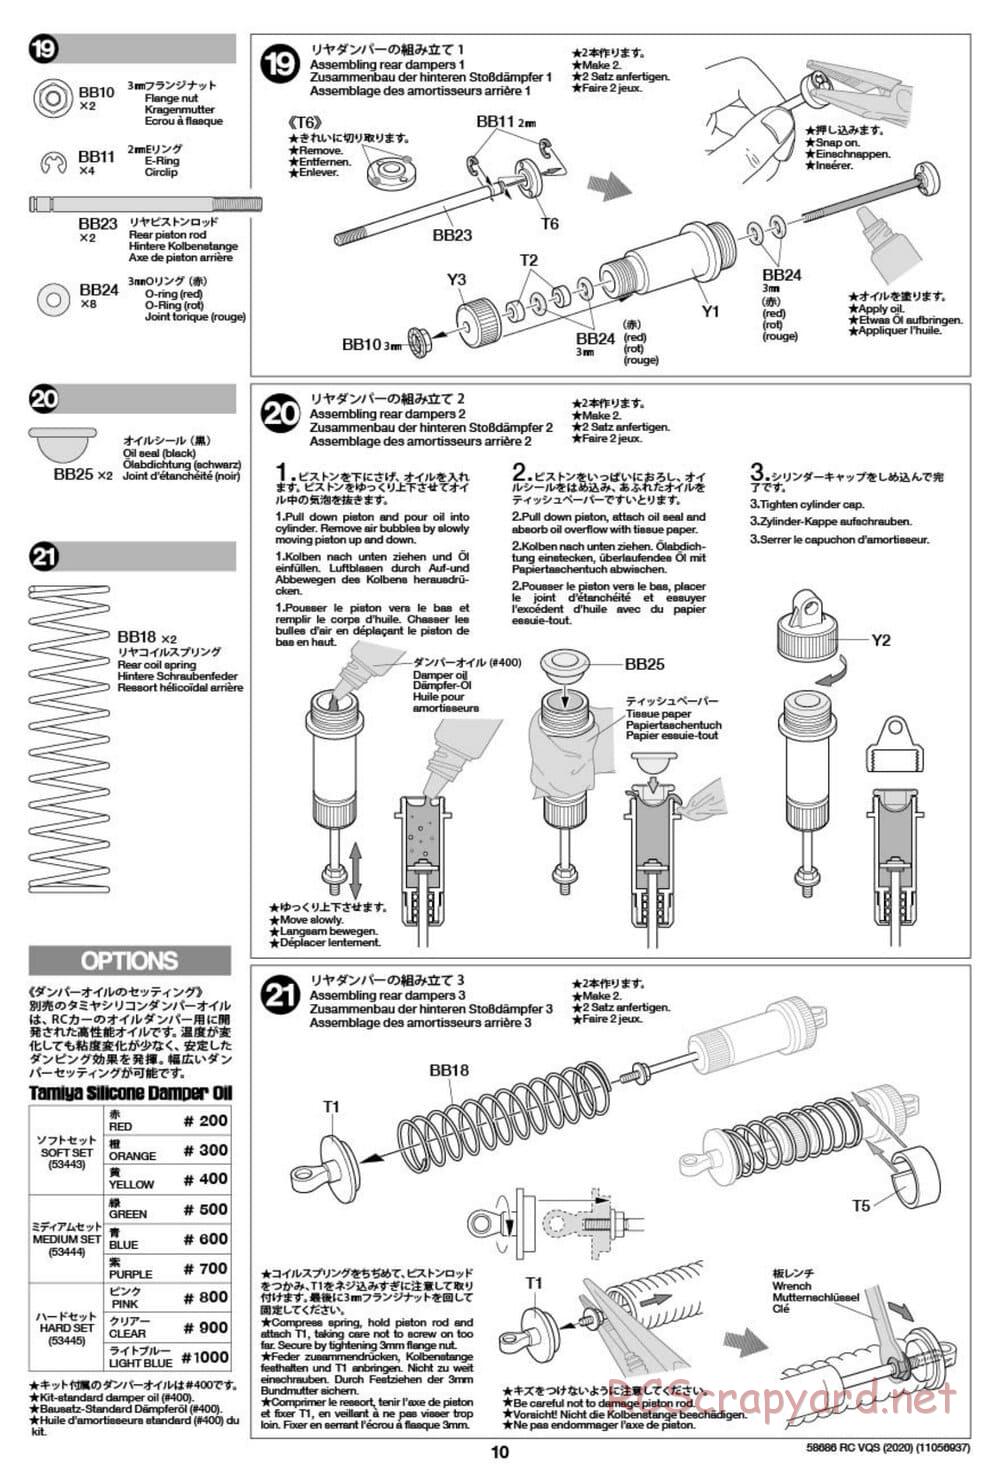 Tamiya - VQS (2020) - AV Chassis - Manual - Page 10